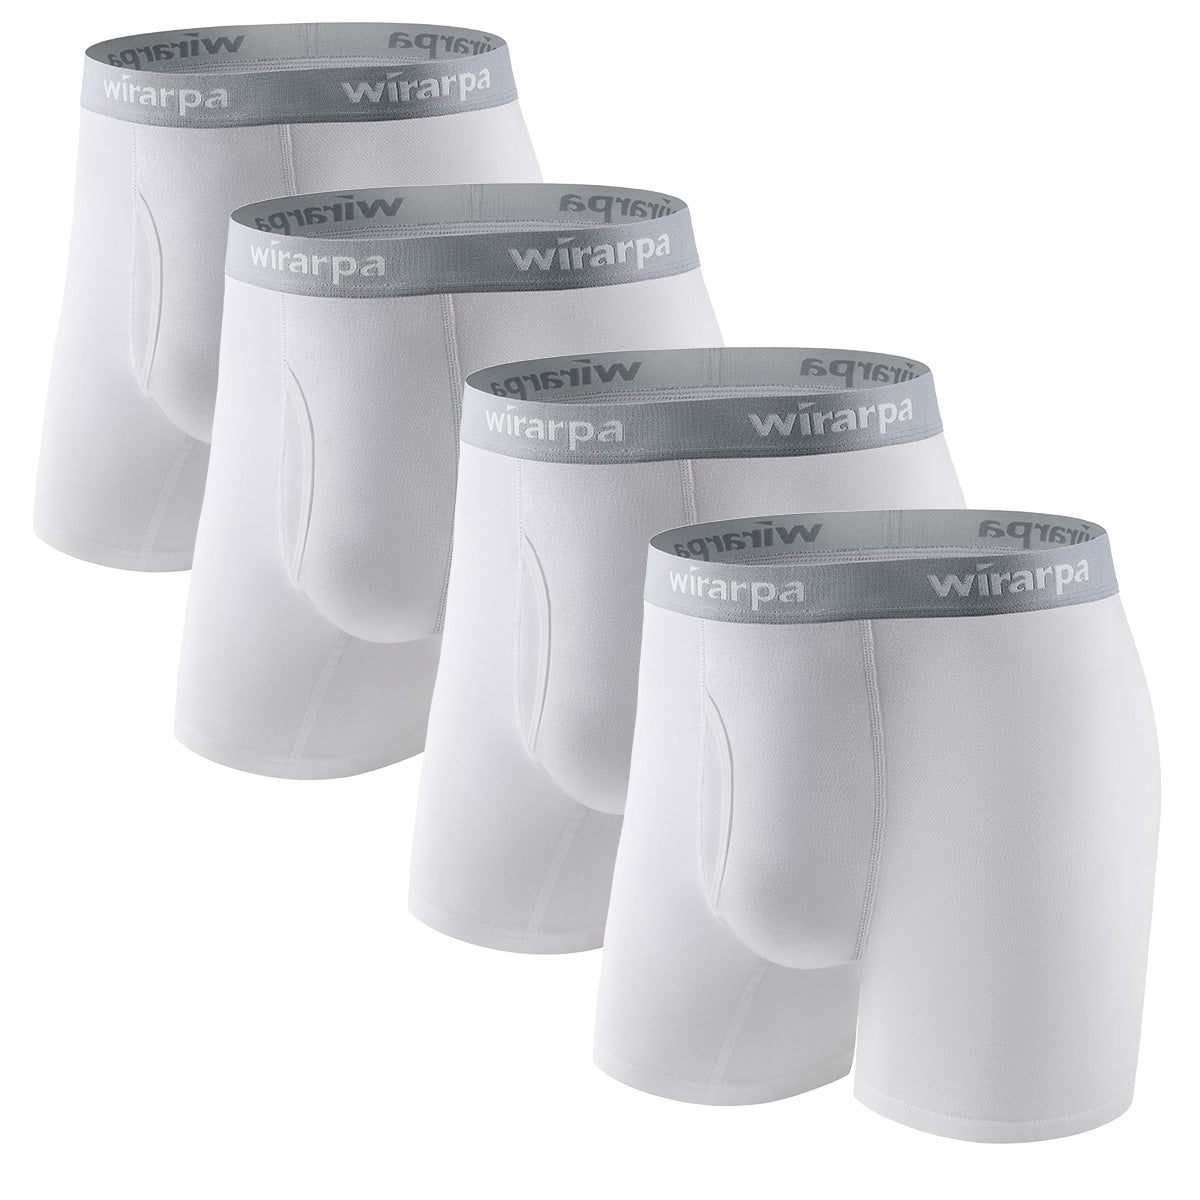 wirarpa Men's Cotton Boxer Briefs Supportive Short Leg Underwear